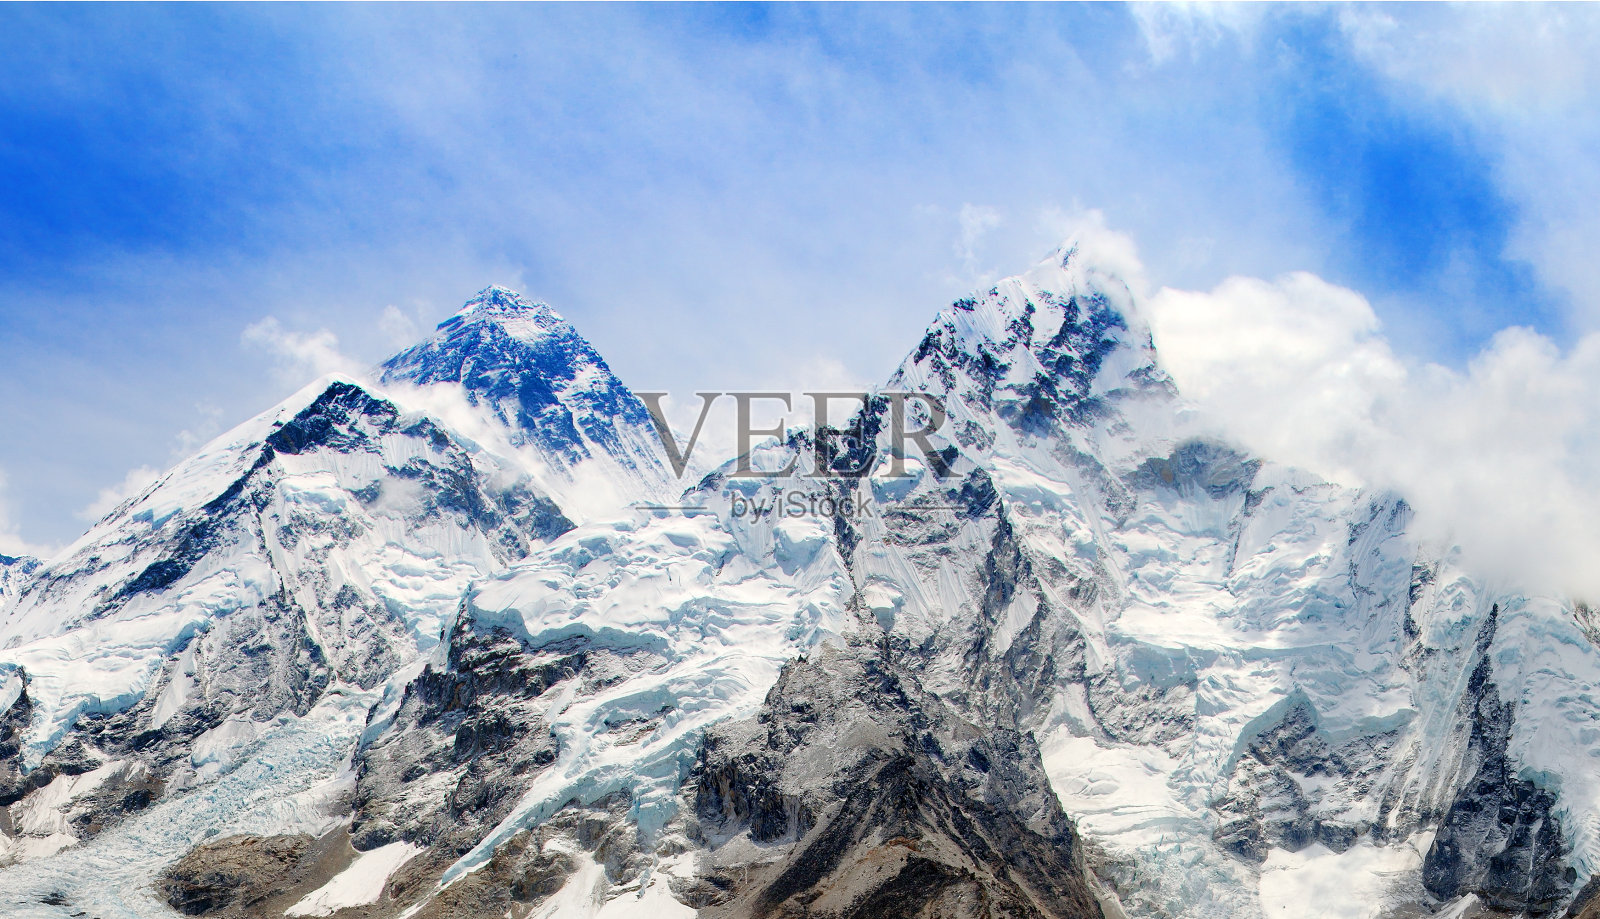 从卡拉帕特尔看到珠穆朗玛峰的顶部照片摄影图片